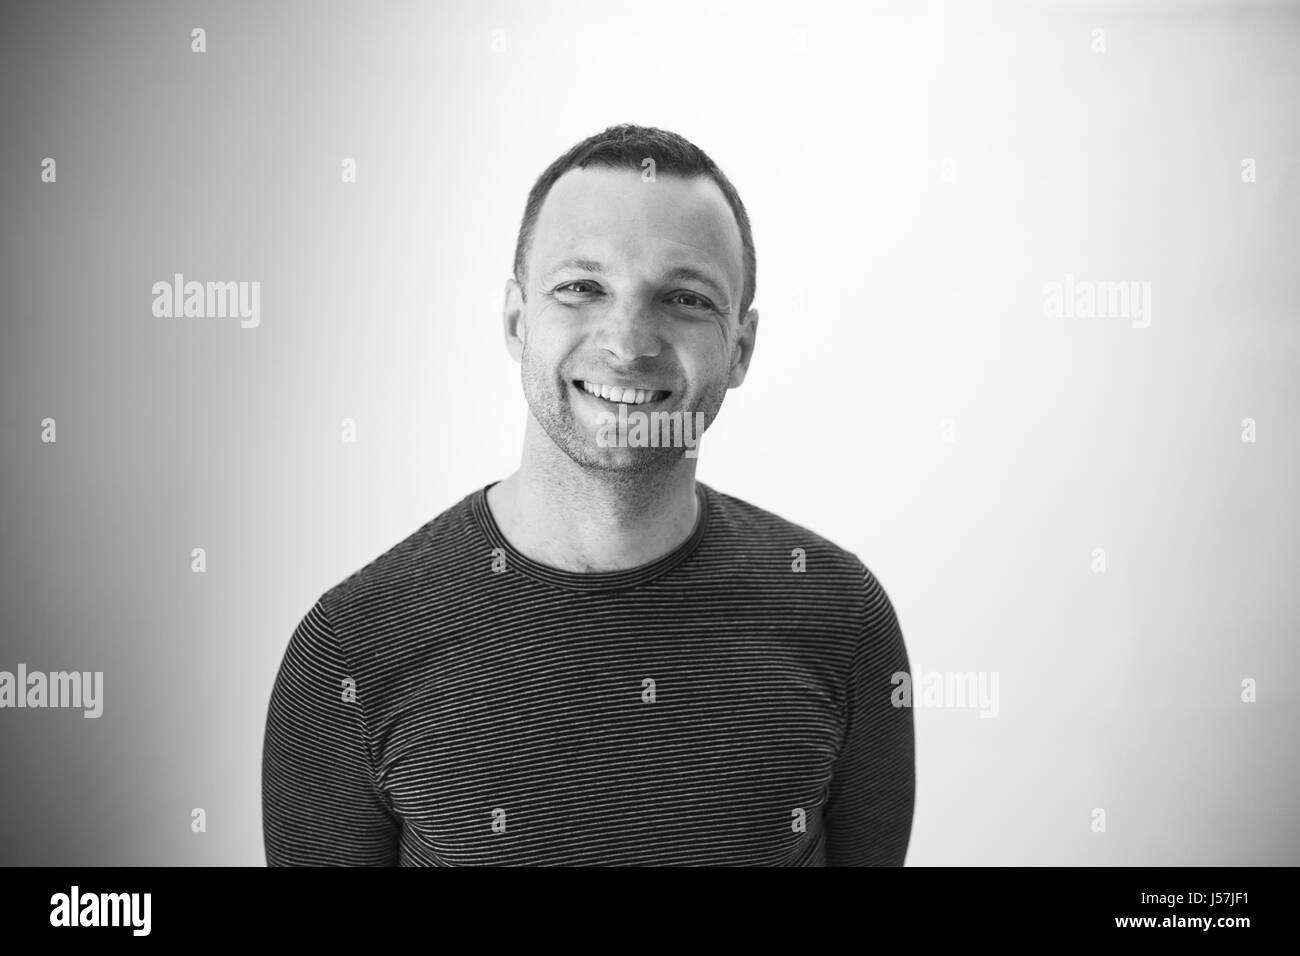 Schwarz / weiß Studioportrait lachender jungen Erwachsenen europäischen Mann über weiße Wand Stockfoto